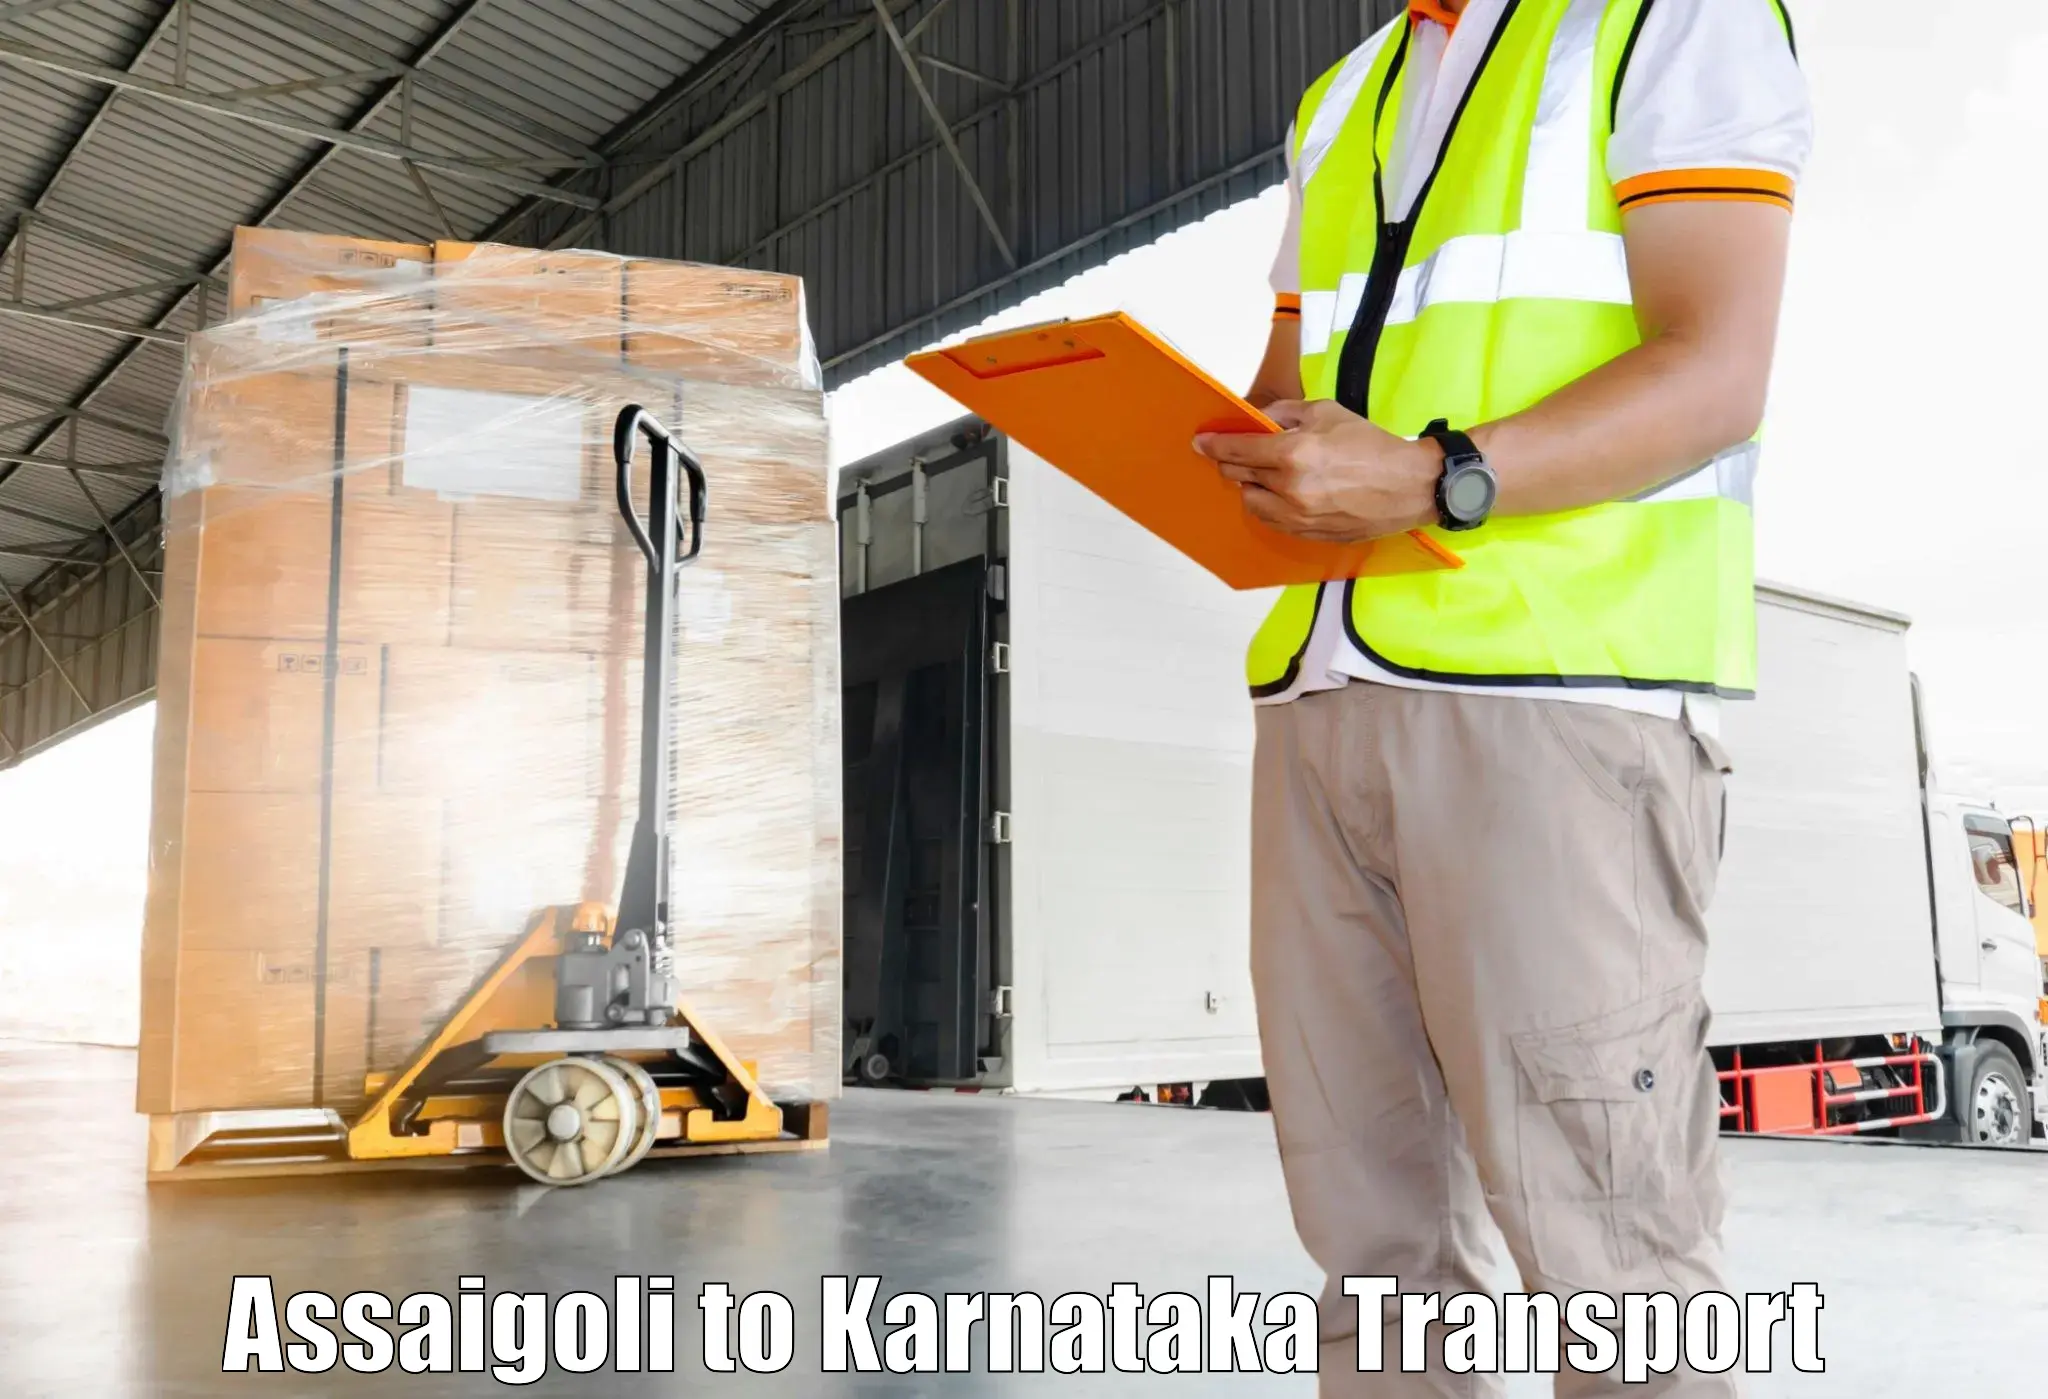 Parcel transport services Assaigoli to Mangalore